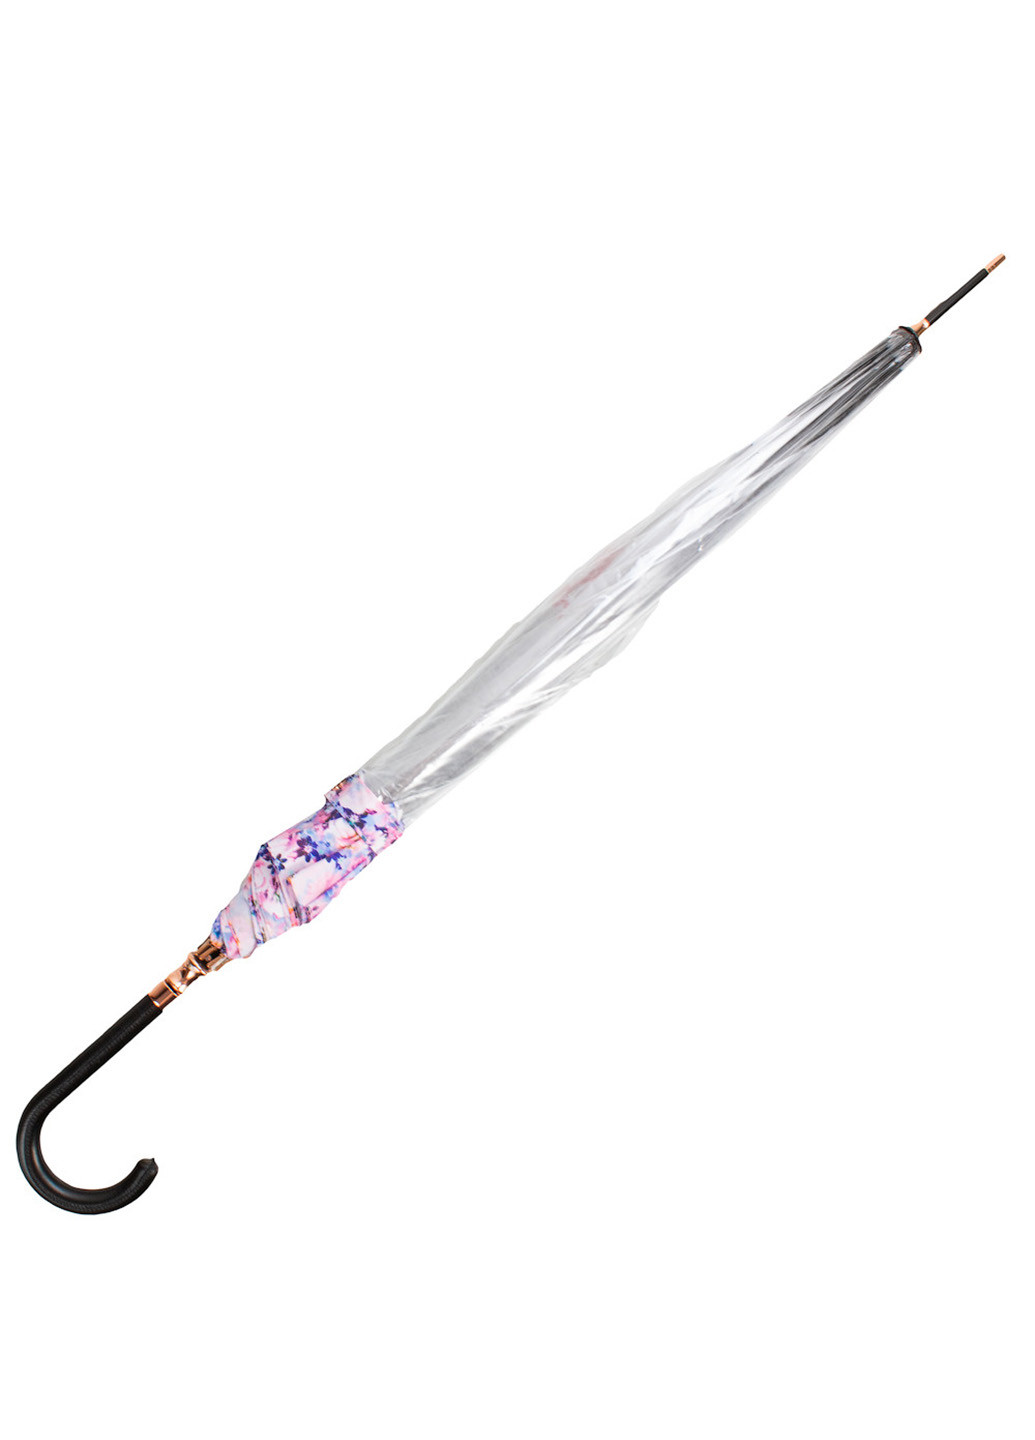 Женский зонт-трость механический 86 см Fulton (216146532)